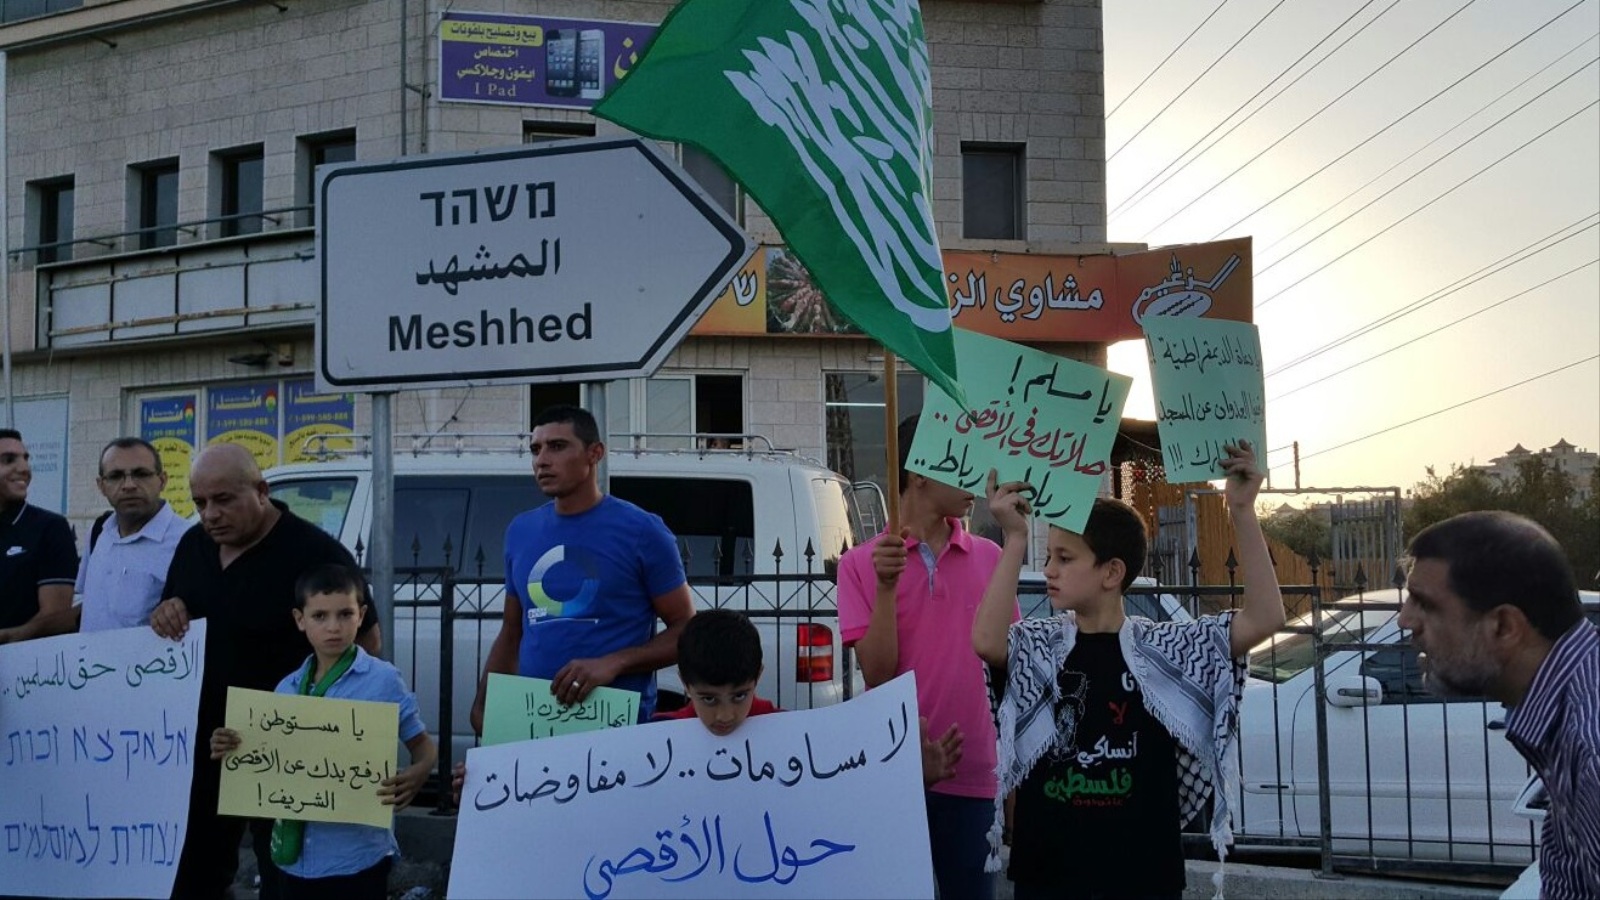 فلسطينيو 48 يرفضون أي مفاوضات والمساومة على القدس والأقصى ويتمسكون بالنضال حتى التحرير(الجزيرة)